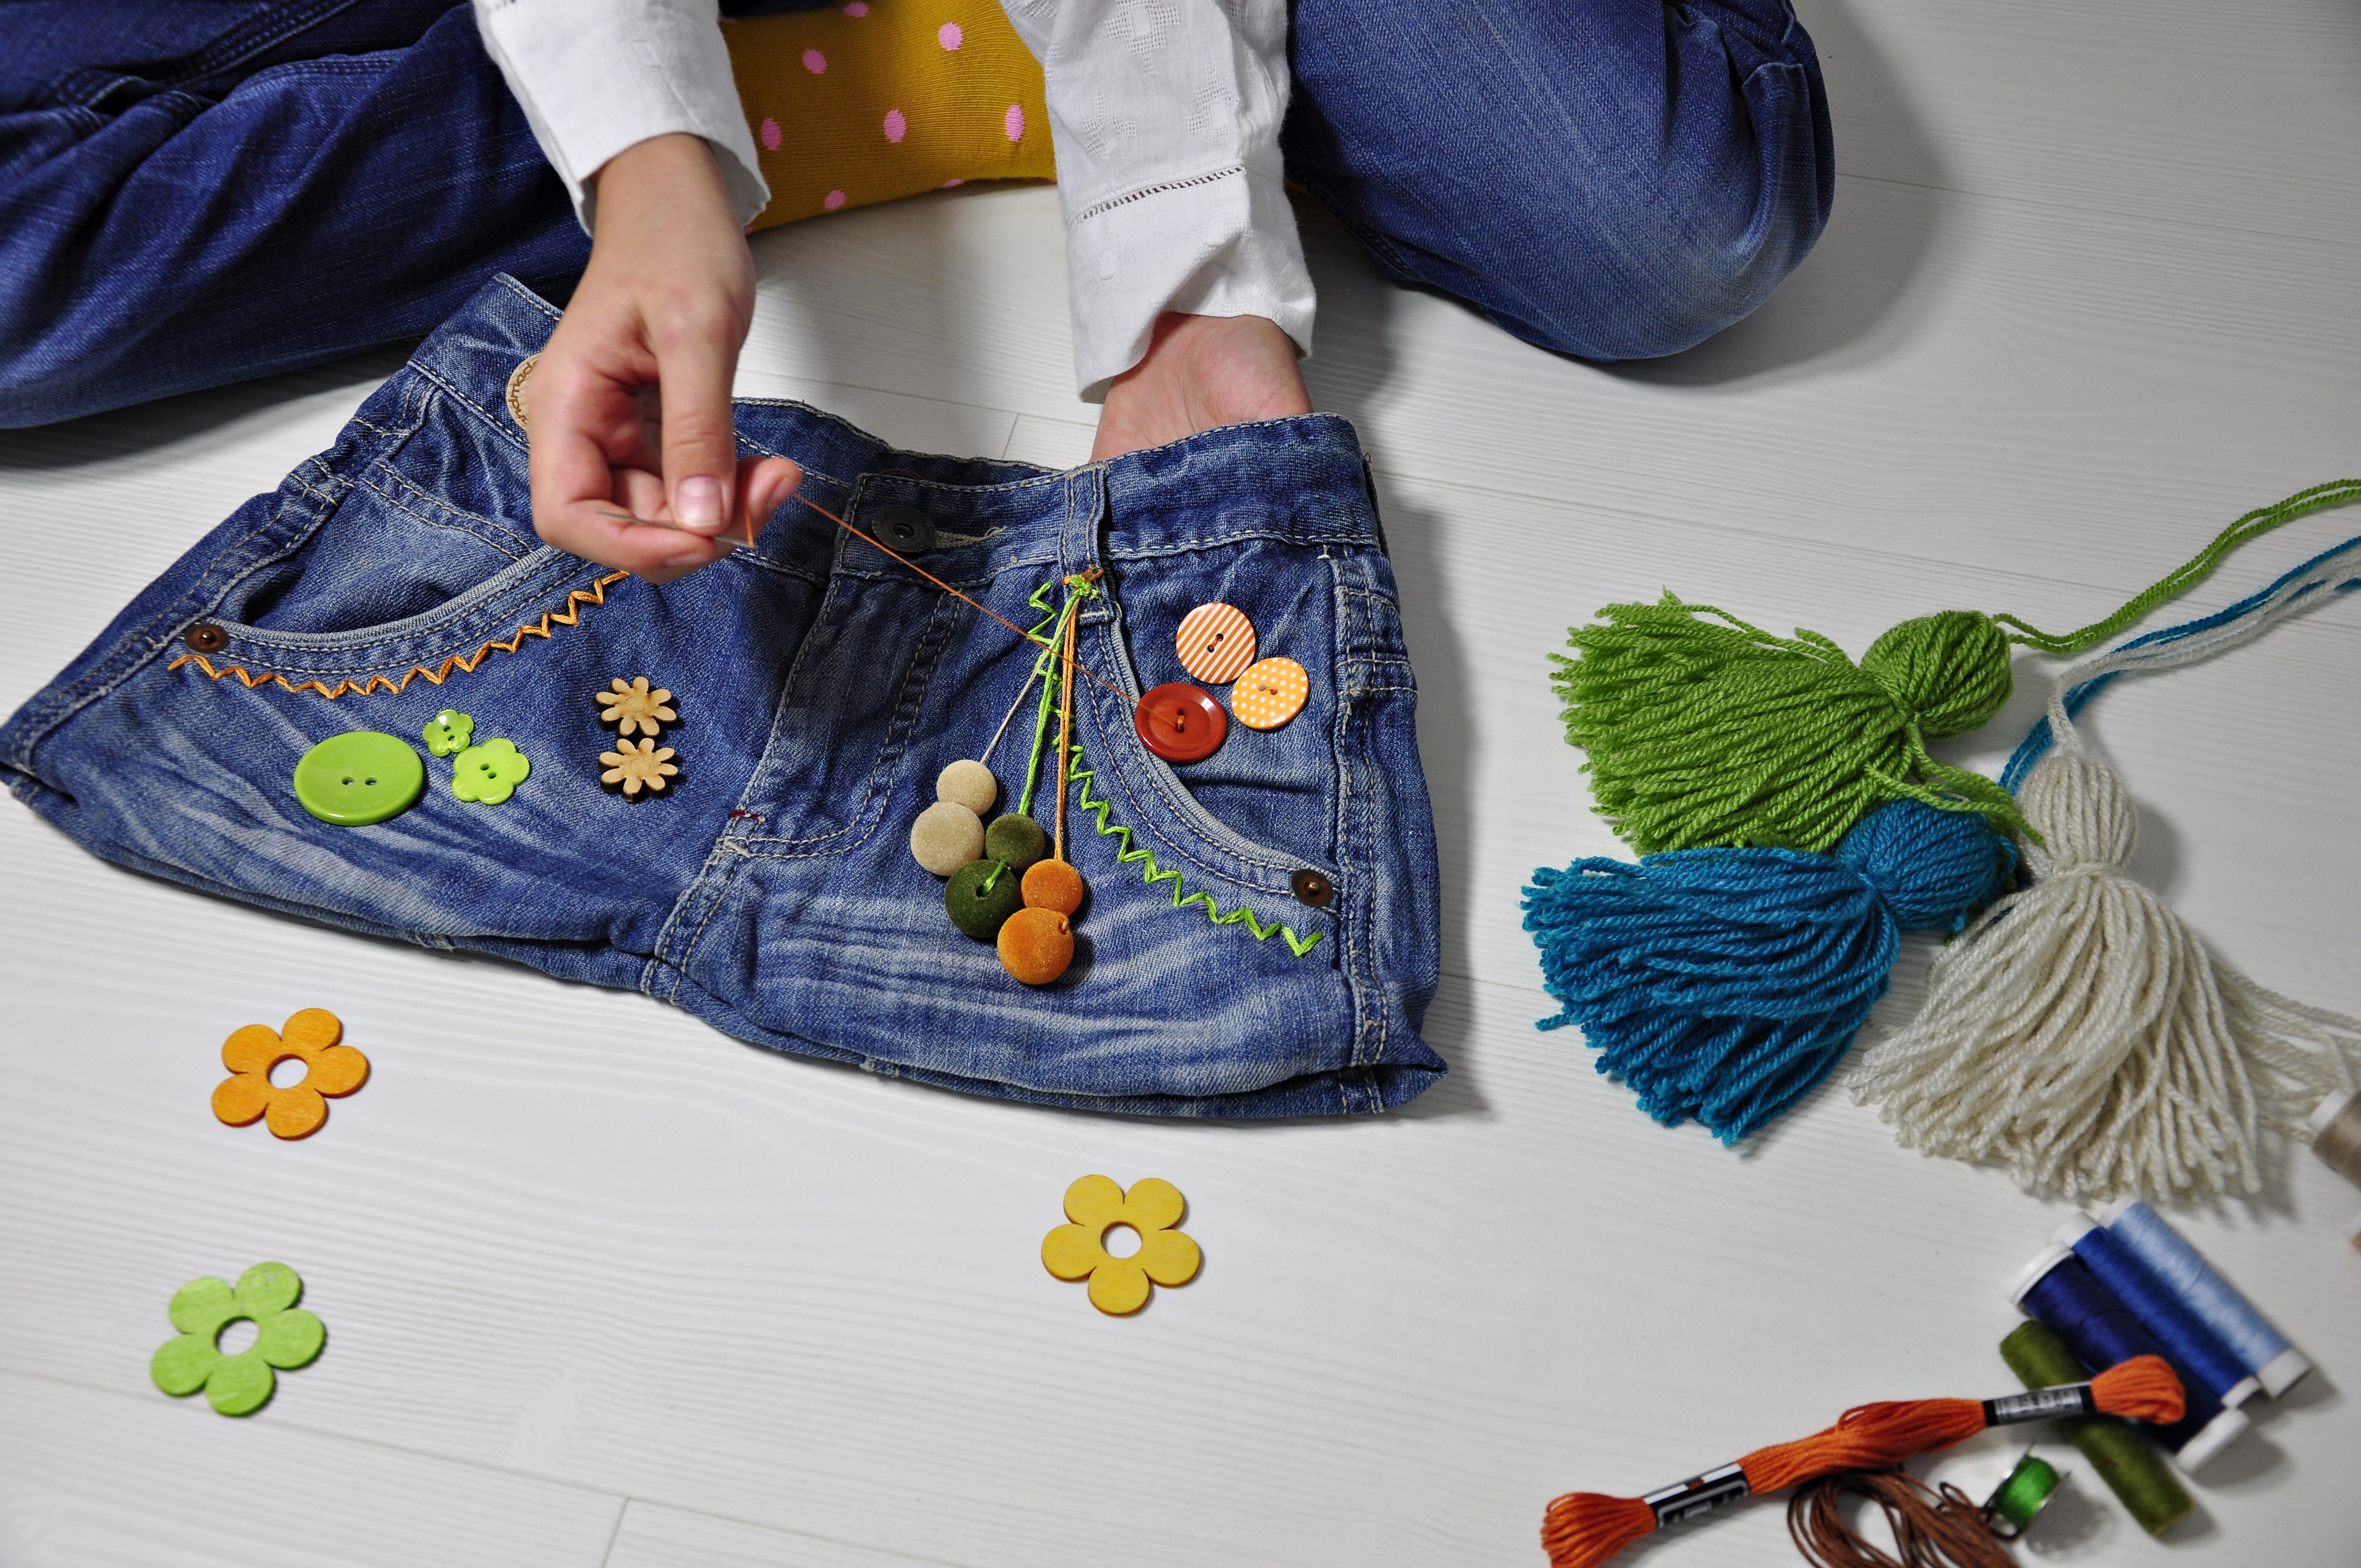 Torba ze spodni dżinsowych - dekorowanie kolorowymi ozdobami